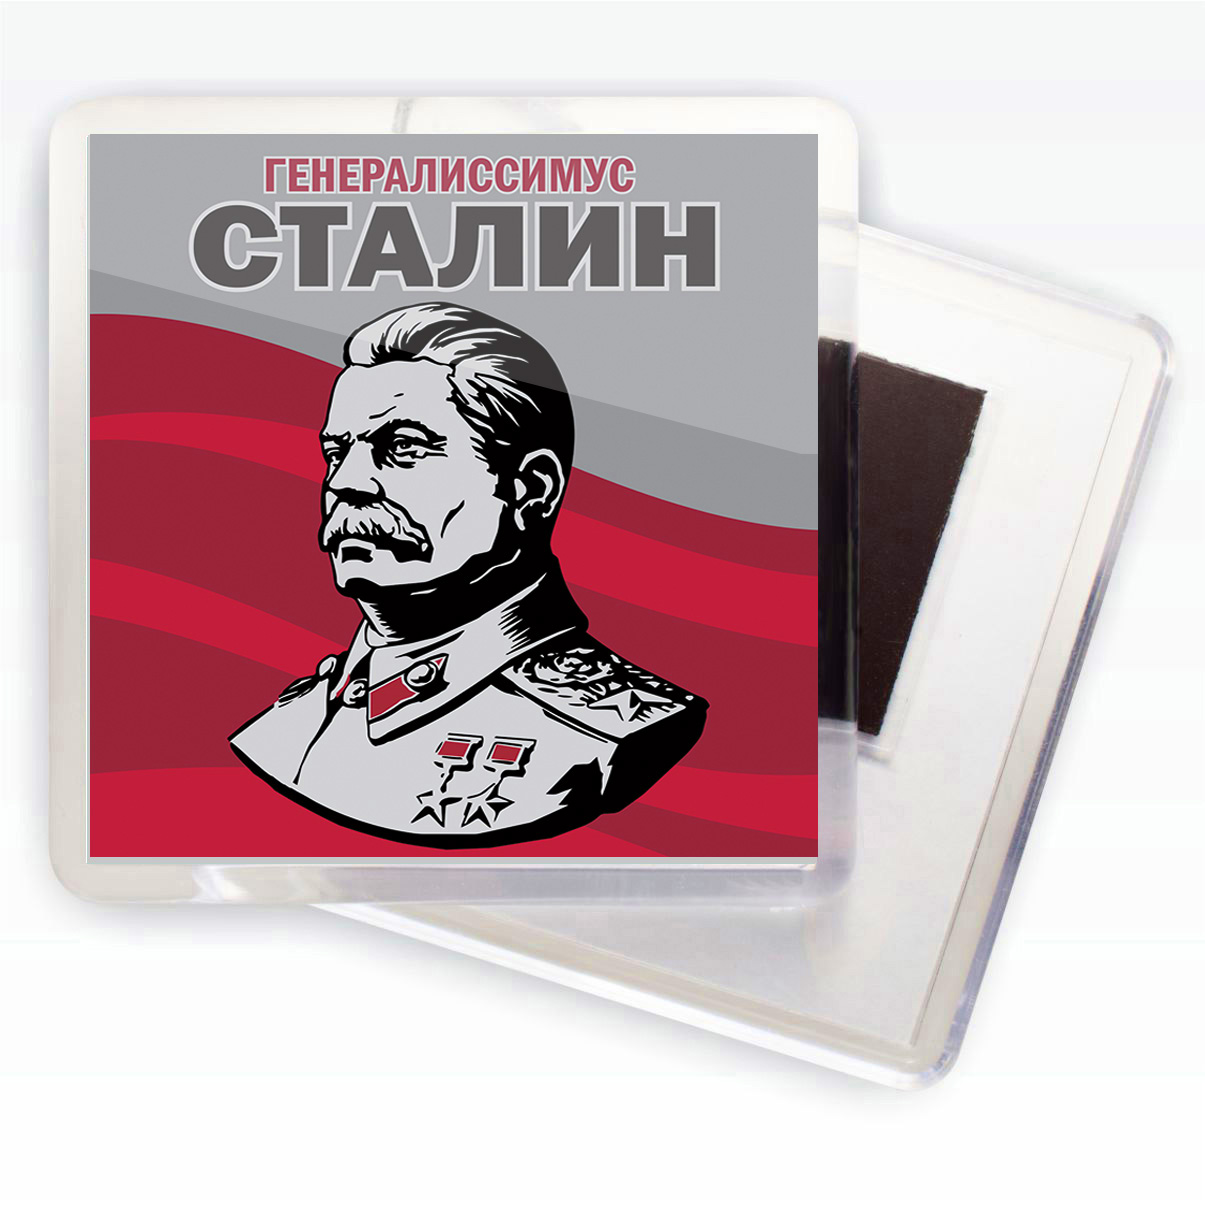 Купить магнитик Сталин в качестве сувенира